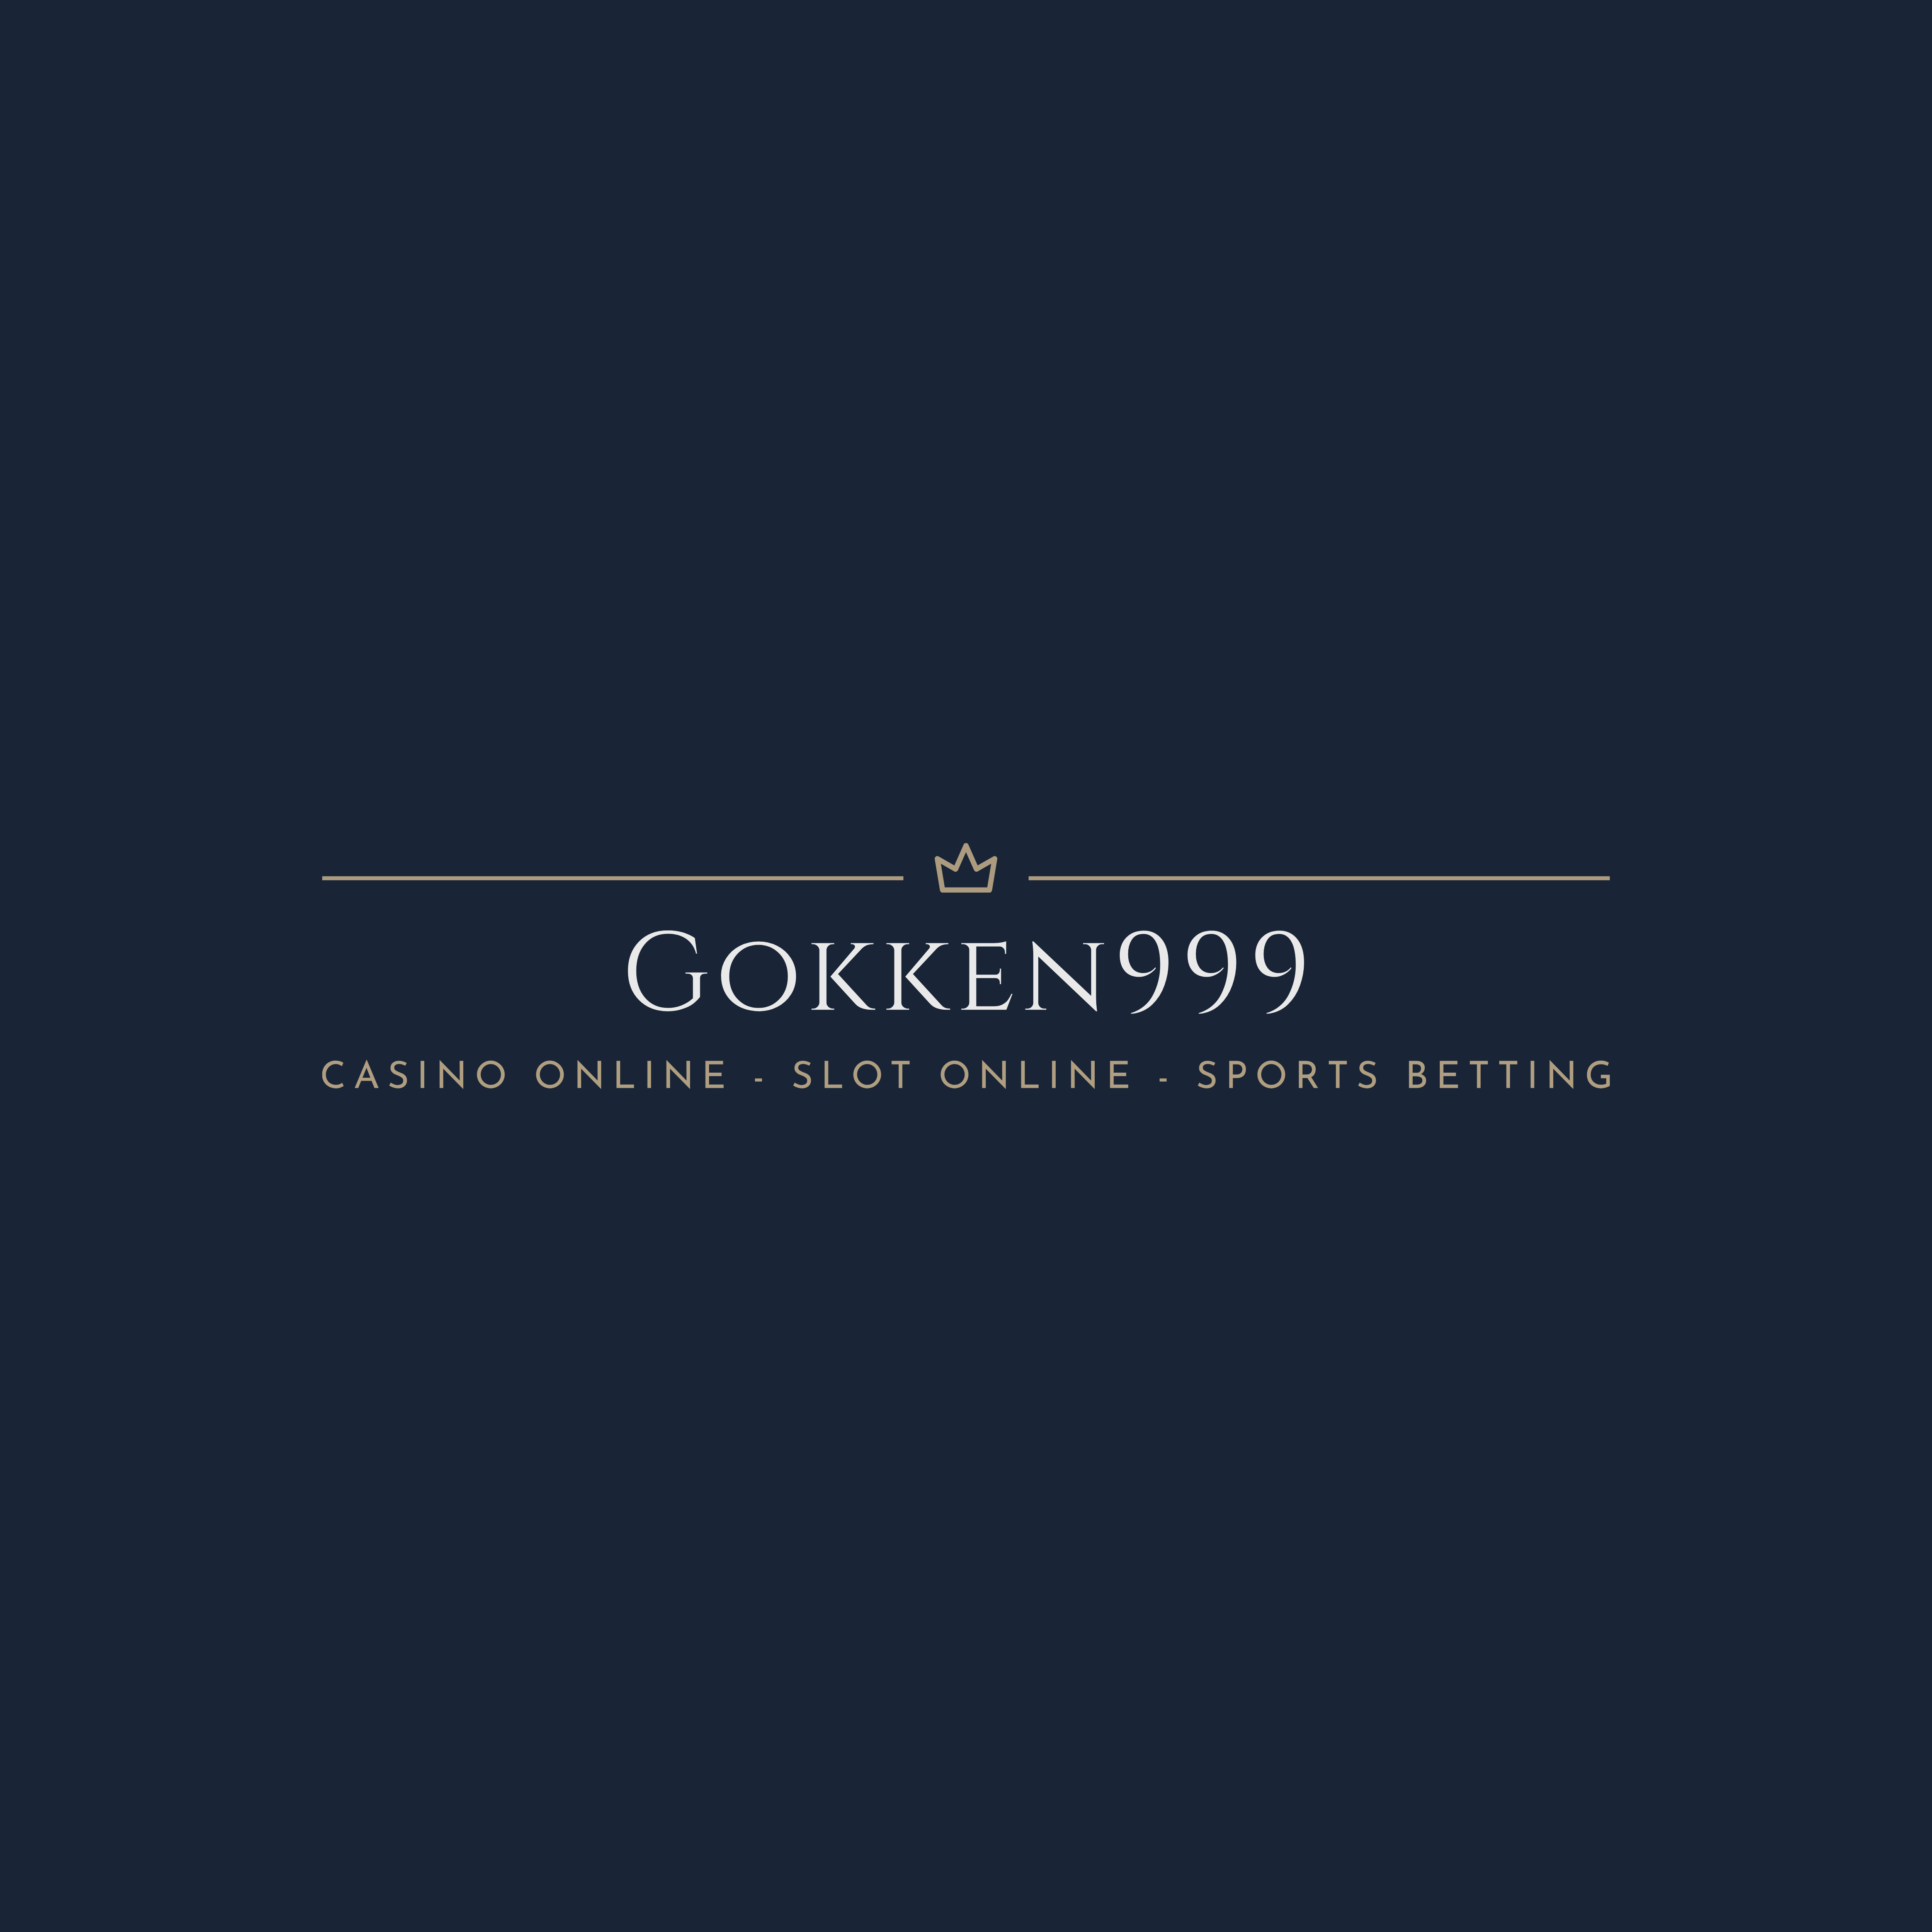 Gokken999 Slot Online Logo